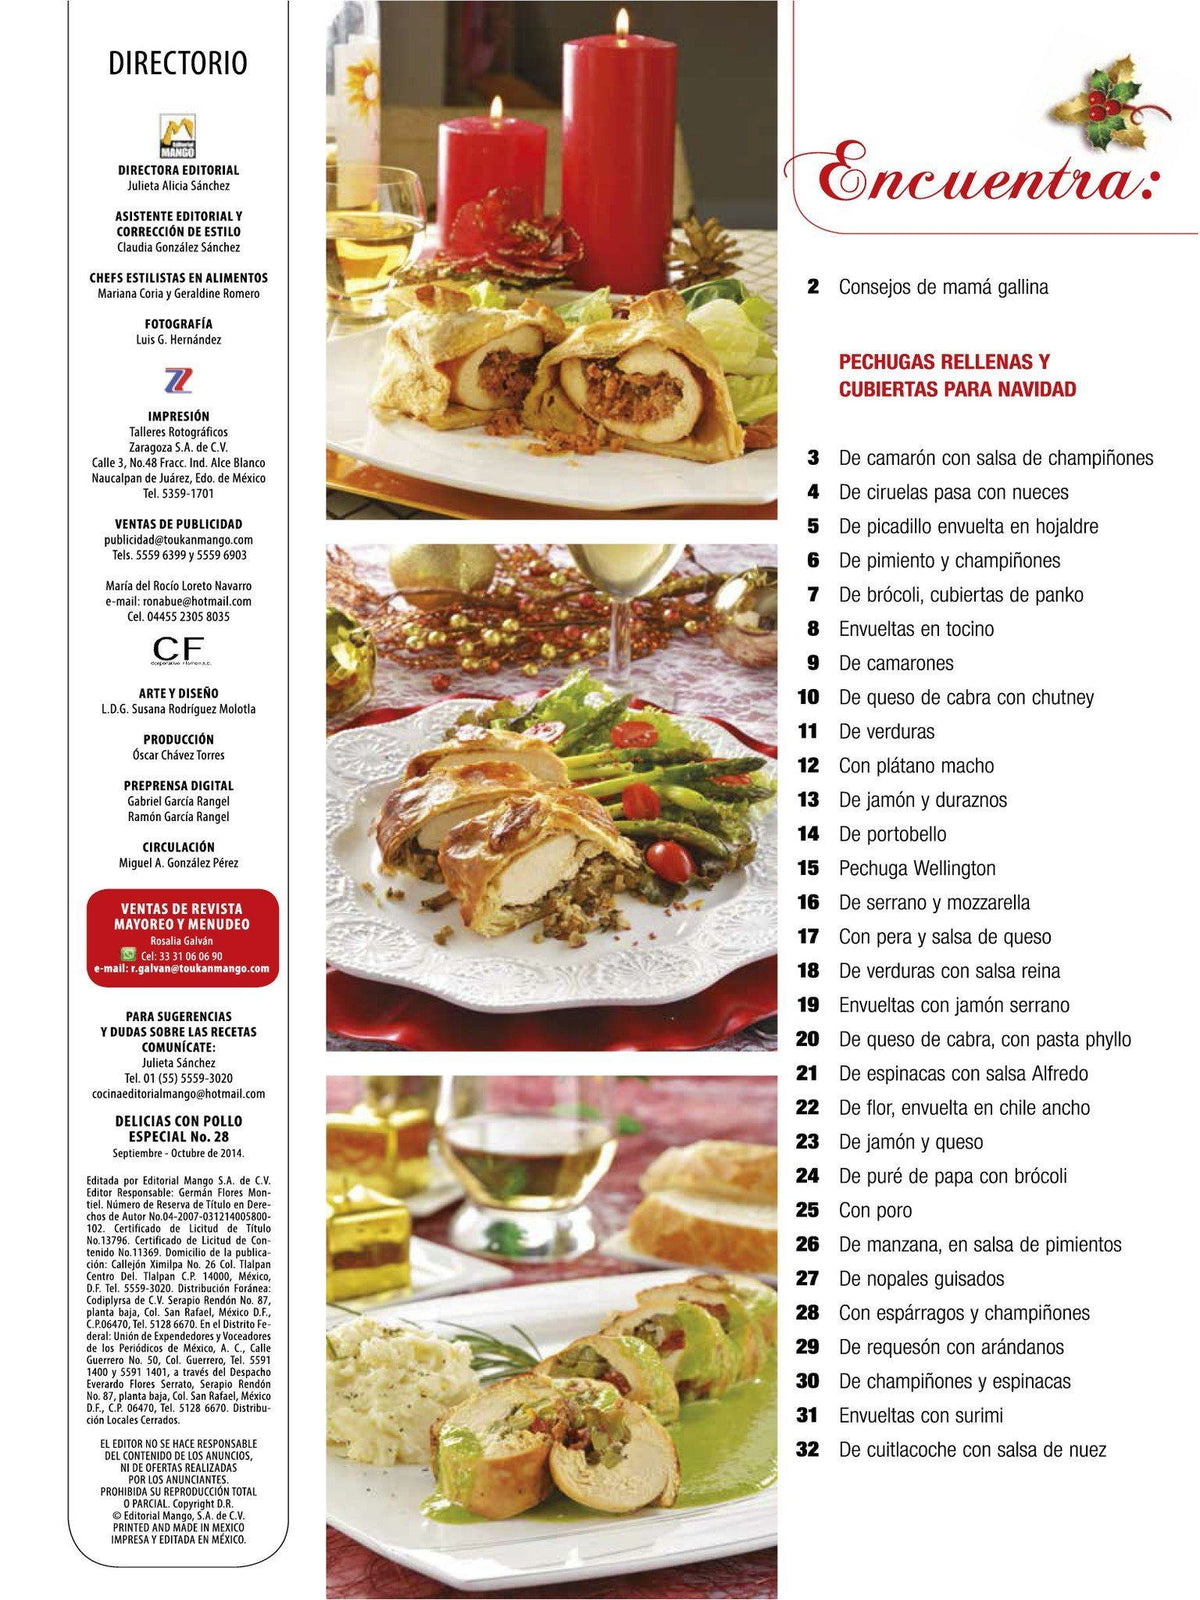 Delicias con Pollo Especial 28 - pechugas rellenas y envueltas para Navidad - Formato Digital - ToukanMango